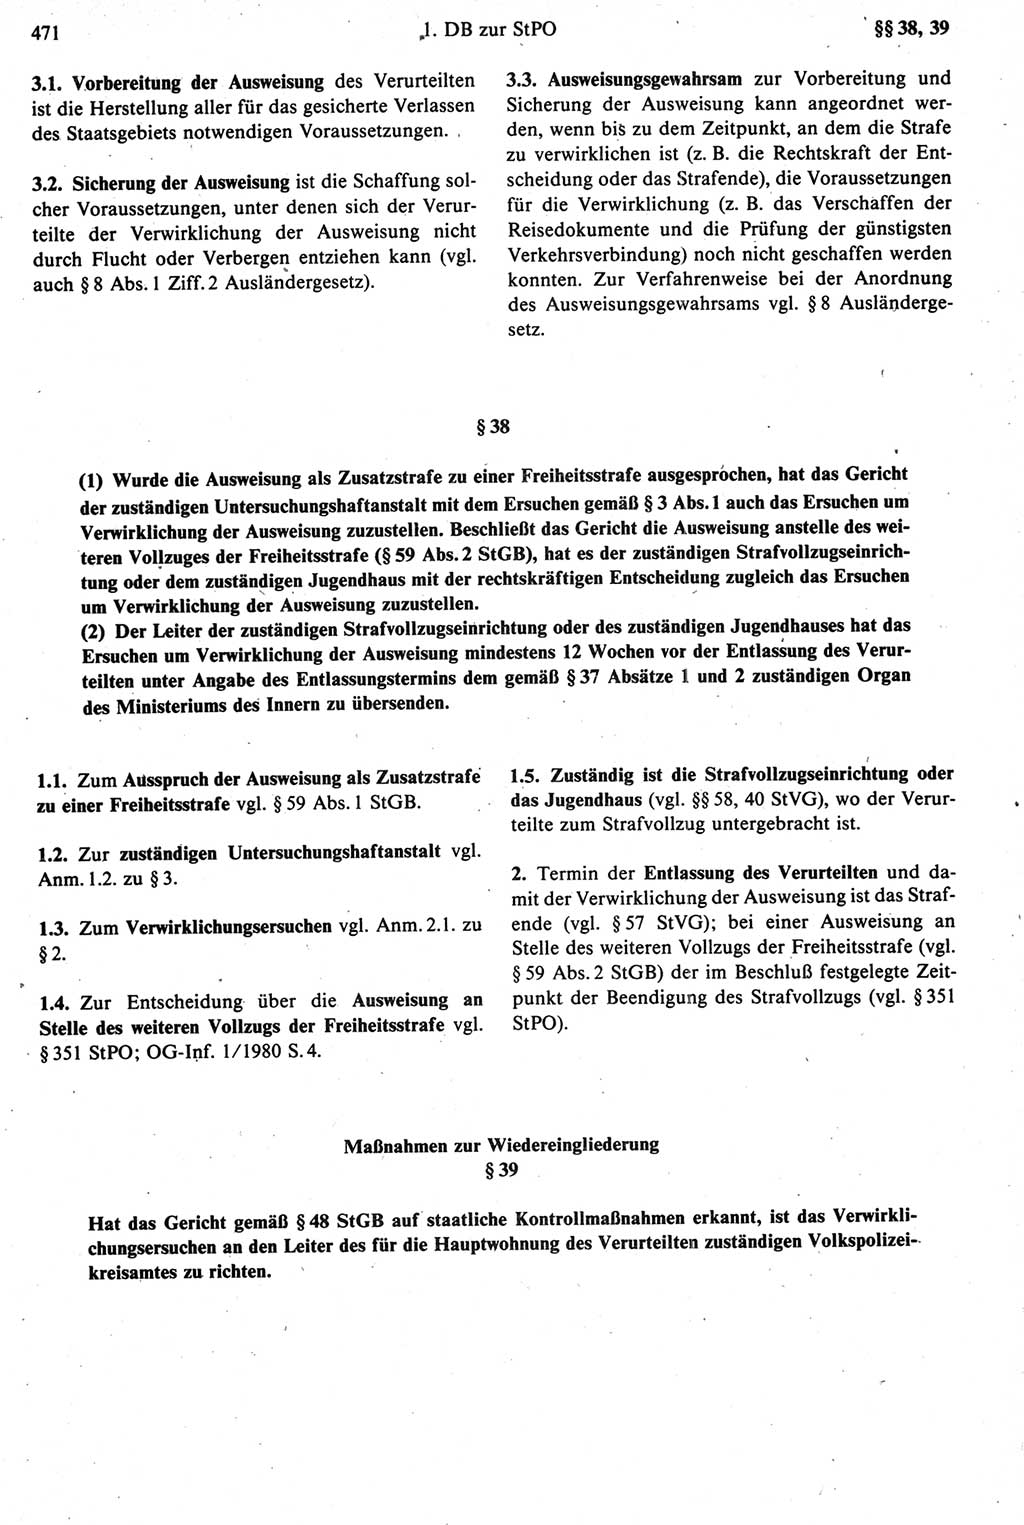 Strafprozeßrecht der DDR [Deutsche Demokratische Republik], Kommentar zur Strafprozeßordnung (StPO) 1987, Seite 471 (Strafprozeßr. DDR Komm. StPO 1987, S. 471)